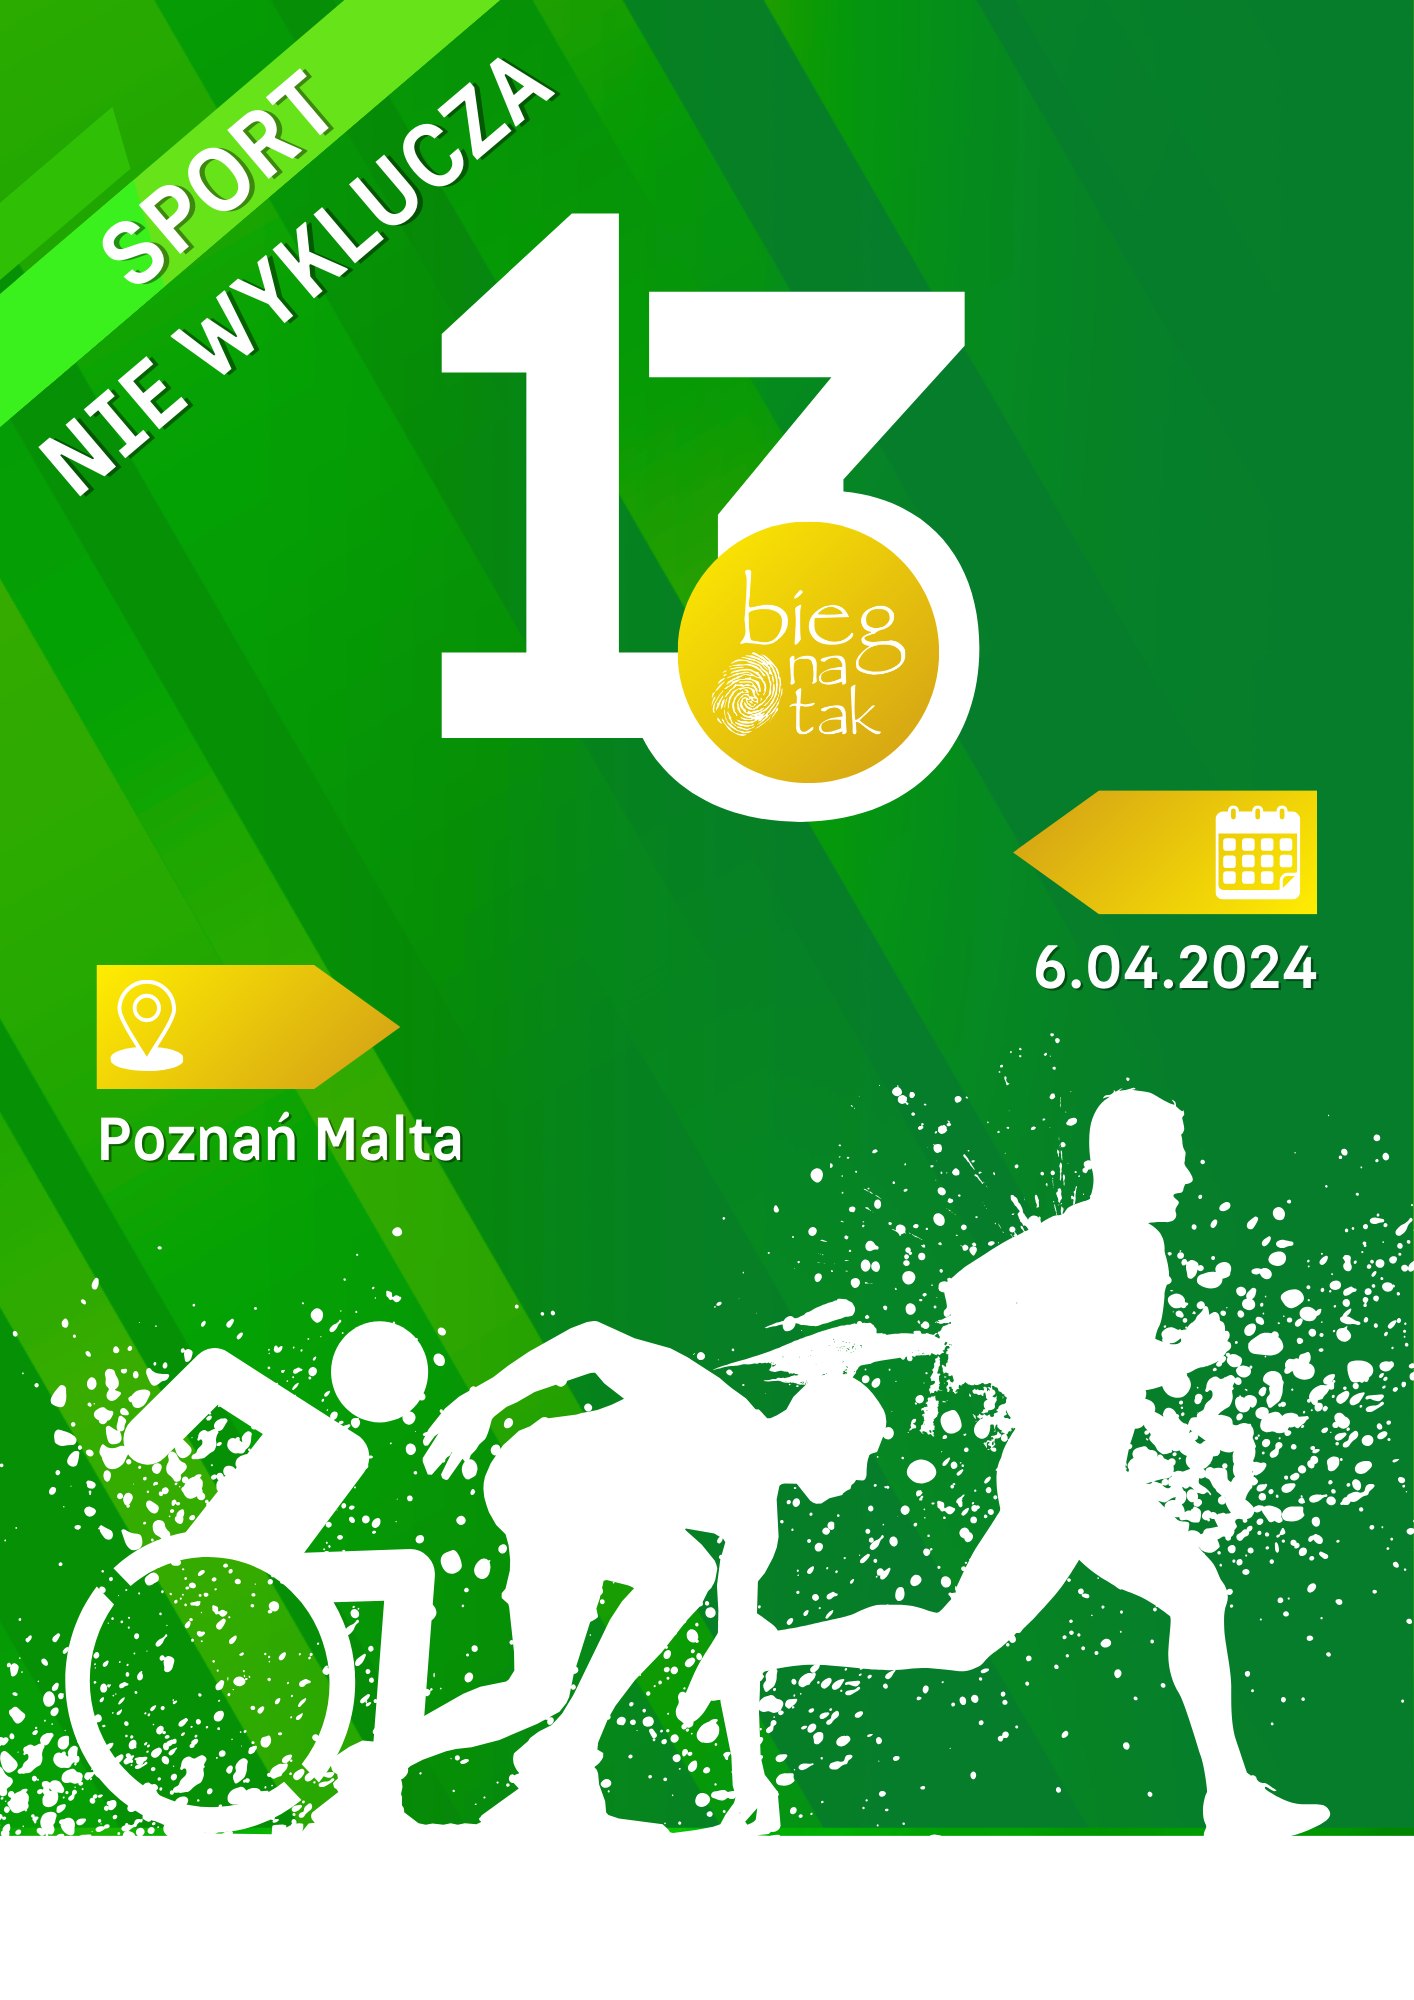 Plakat wydarzenia pod nazwą "Bieg na tak" na którym znajduje się data i godzina biegu oraz hasło "Sport nie wyklucza"